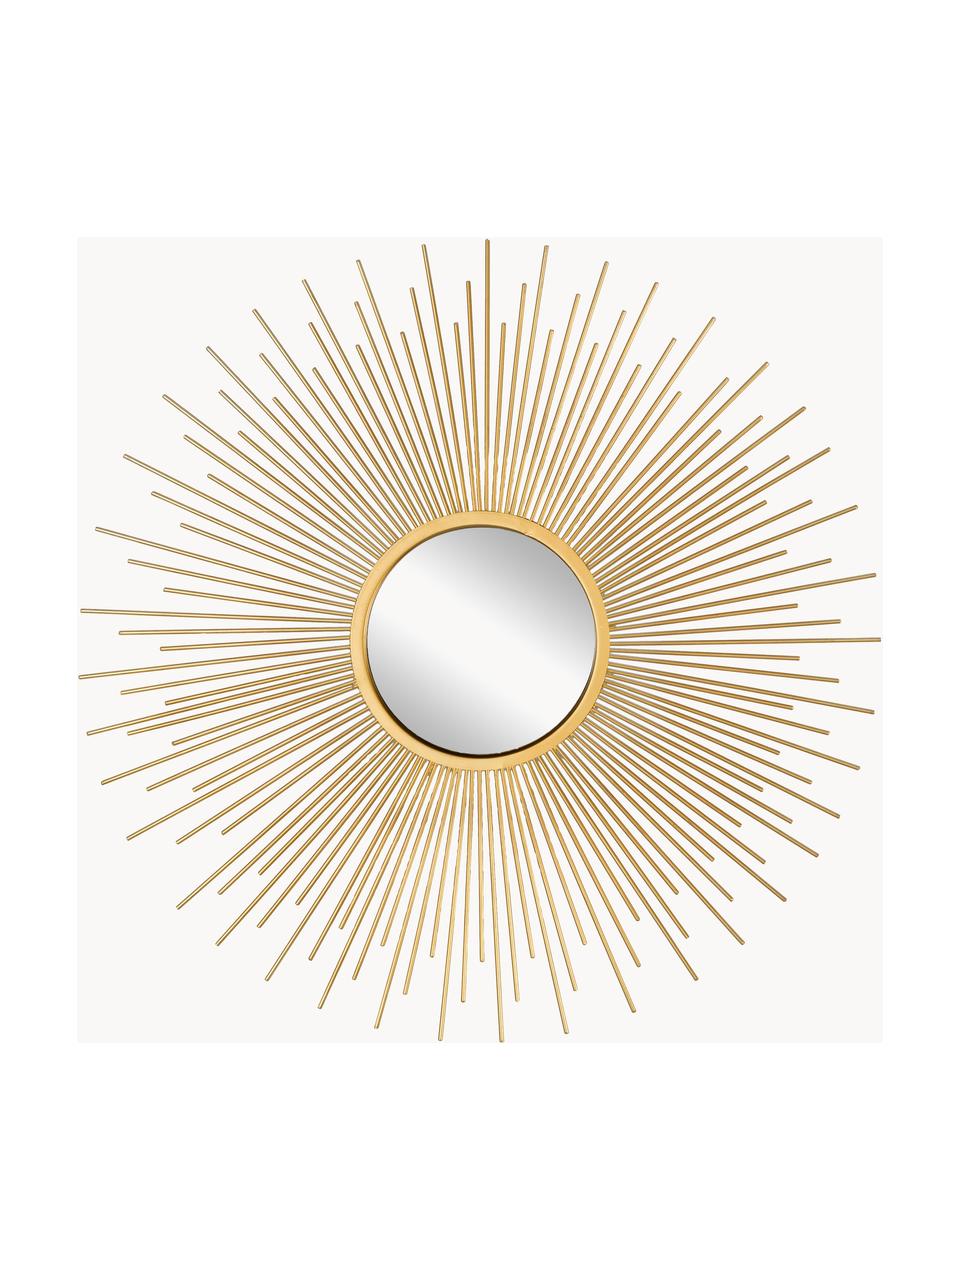 Dekospiegel Sun, 3er-Set, Rahmen: Metall, beschichtet, Spiegelfläche: Spiegelglas, Goldfarben, Set mit verschiedenen Grössen